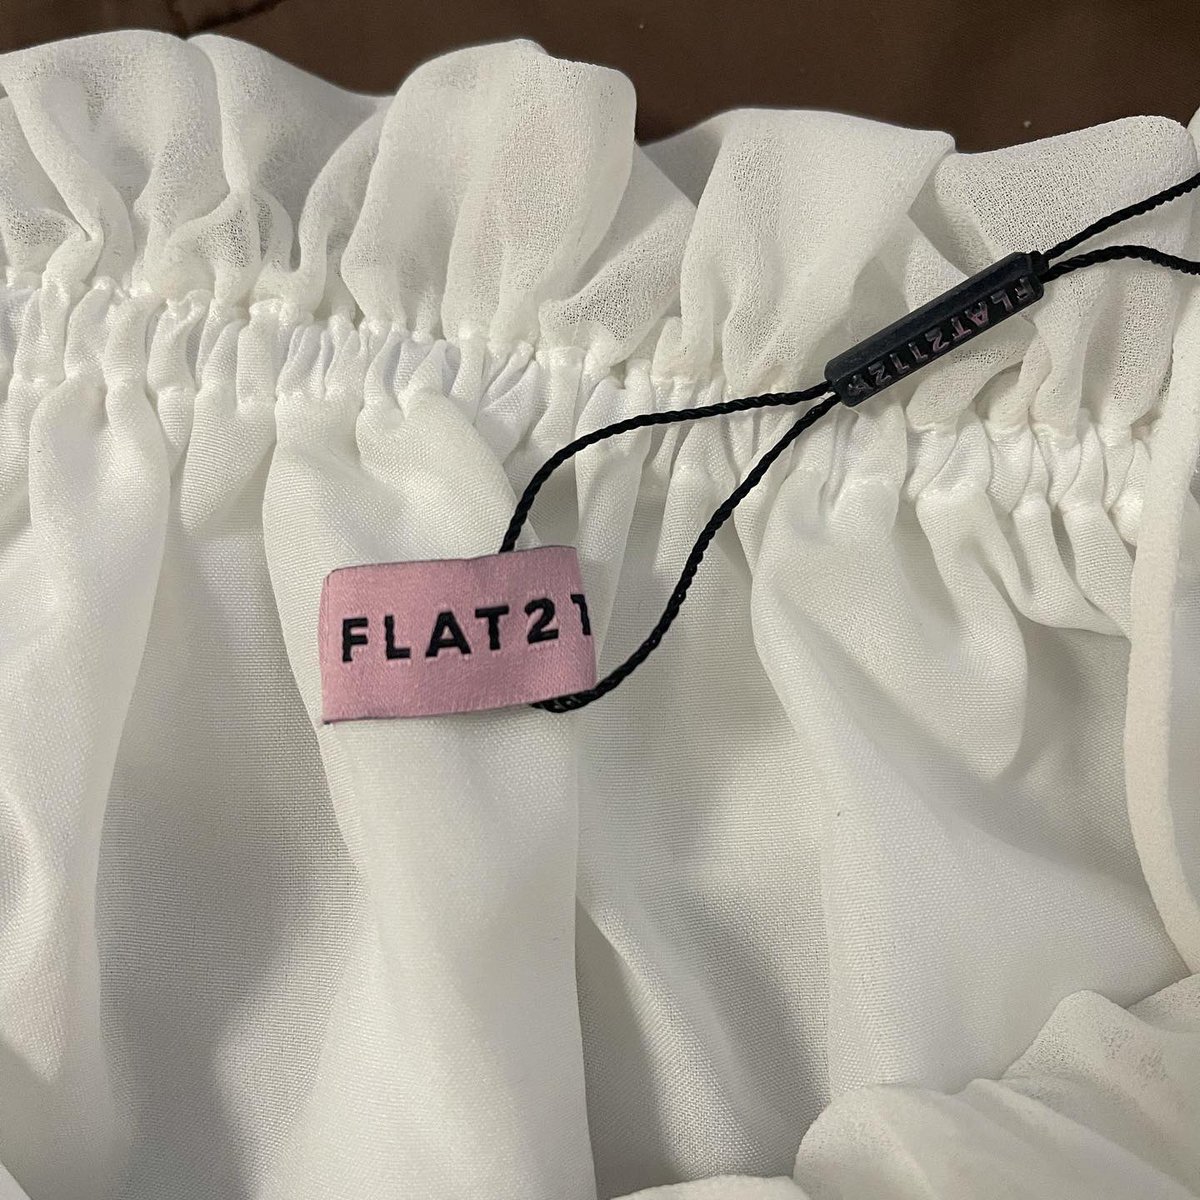 ส่งต่อแบรนด์ไอจี Flat2112  ซื้อมา590฿ ส่งต่อ 450฿รวมส่งค่ะ ใส่ไป1ครั้ง ผ้าดีมากๆค่ะ
#ส่งต่อ  #ส่งต่อเสื้อผ้ามือสองสภาพดี  #ส่งต่อflat2112 #ส่งต่อเสื้อเเบรนด์ไอจี #ส่งต่อเสื้อผ้ามือ2